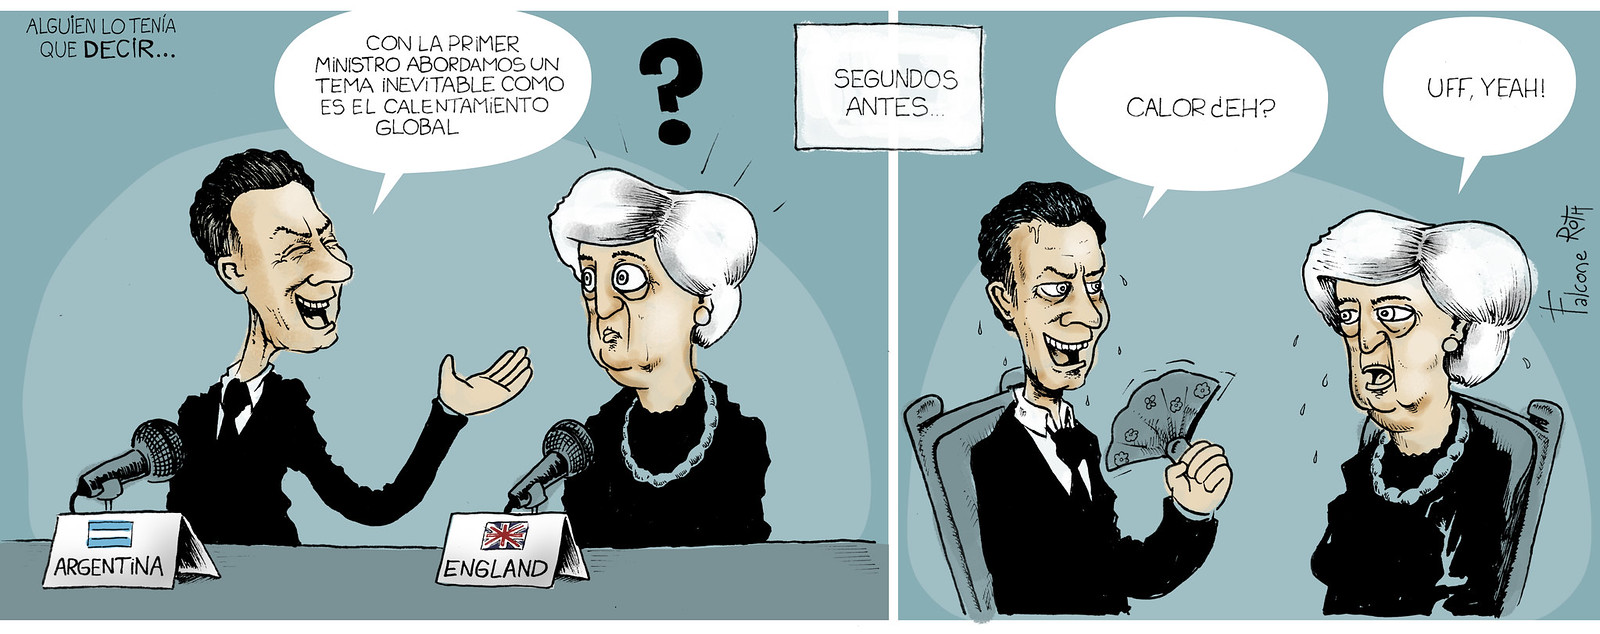 theresa may y Mauricio Macri